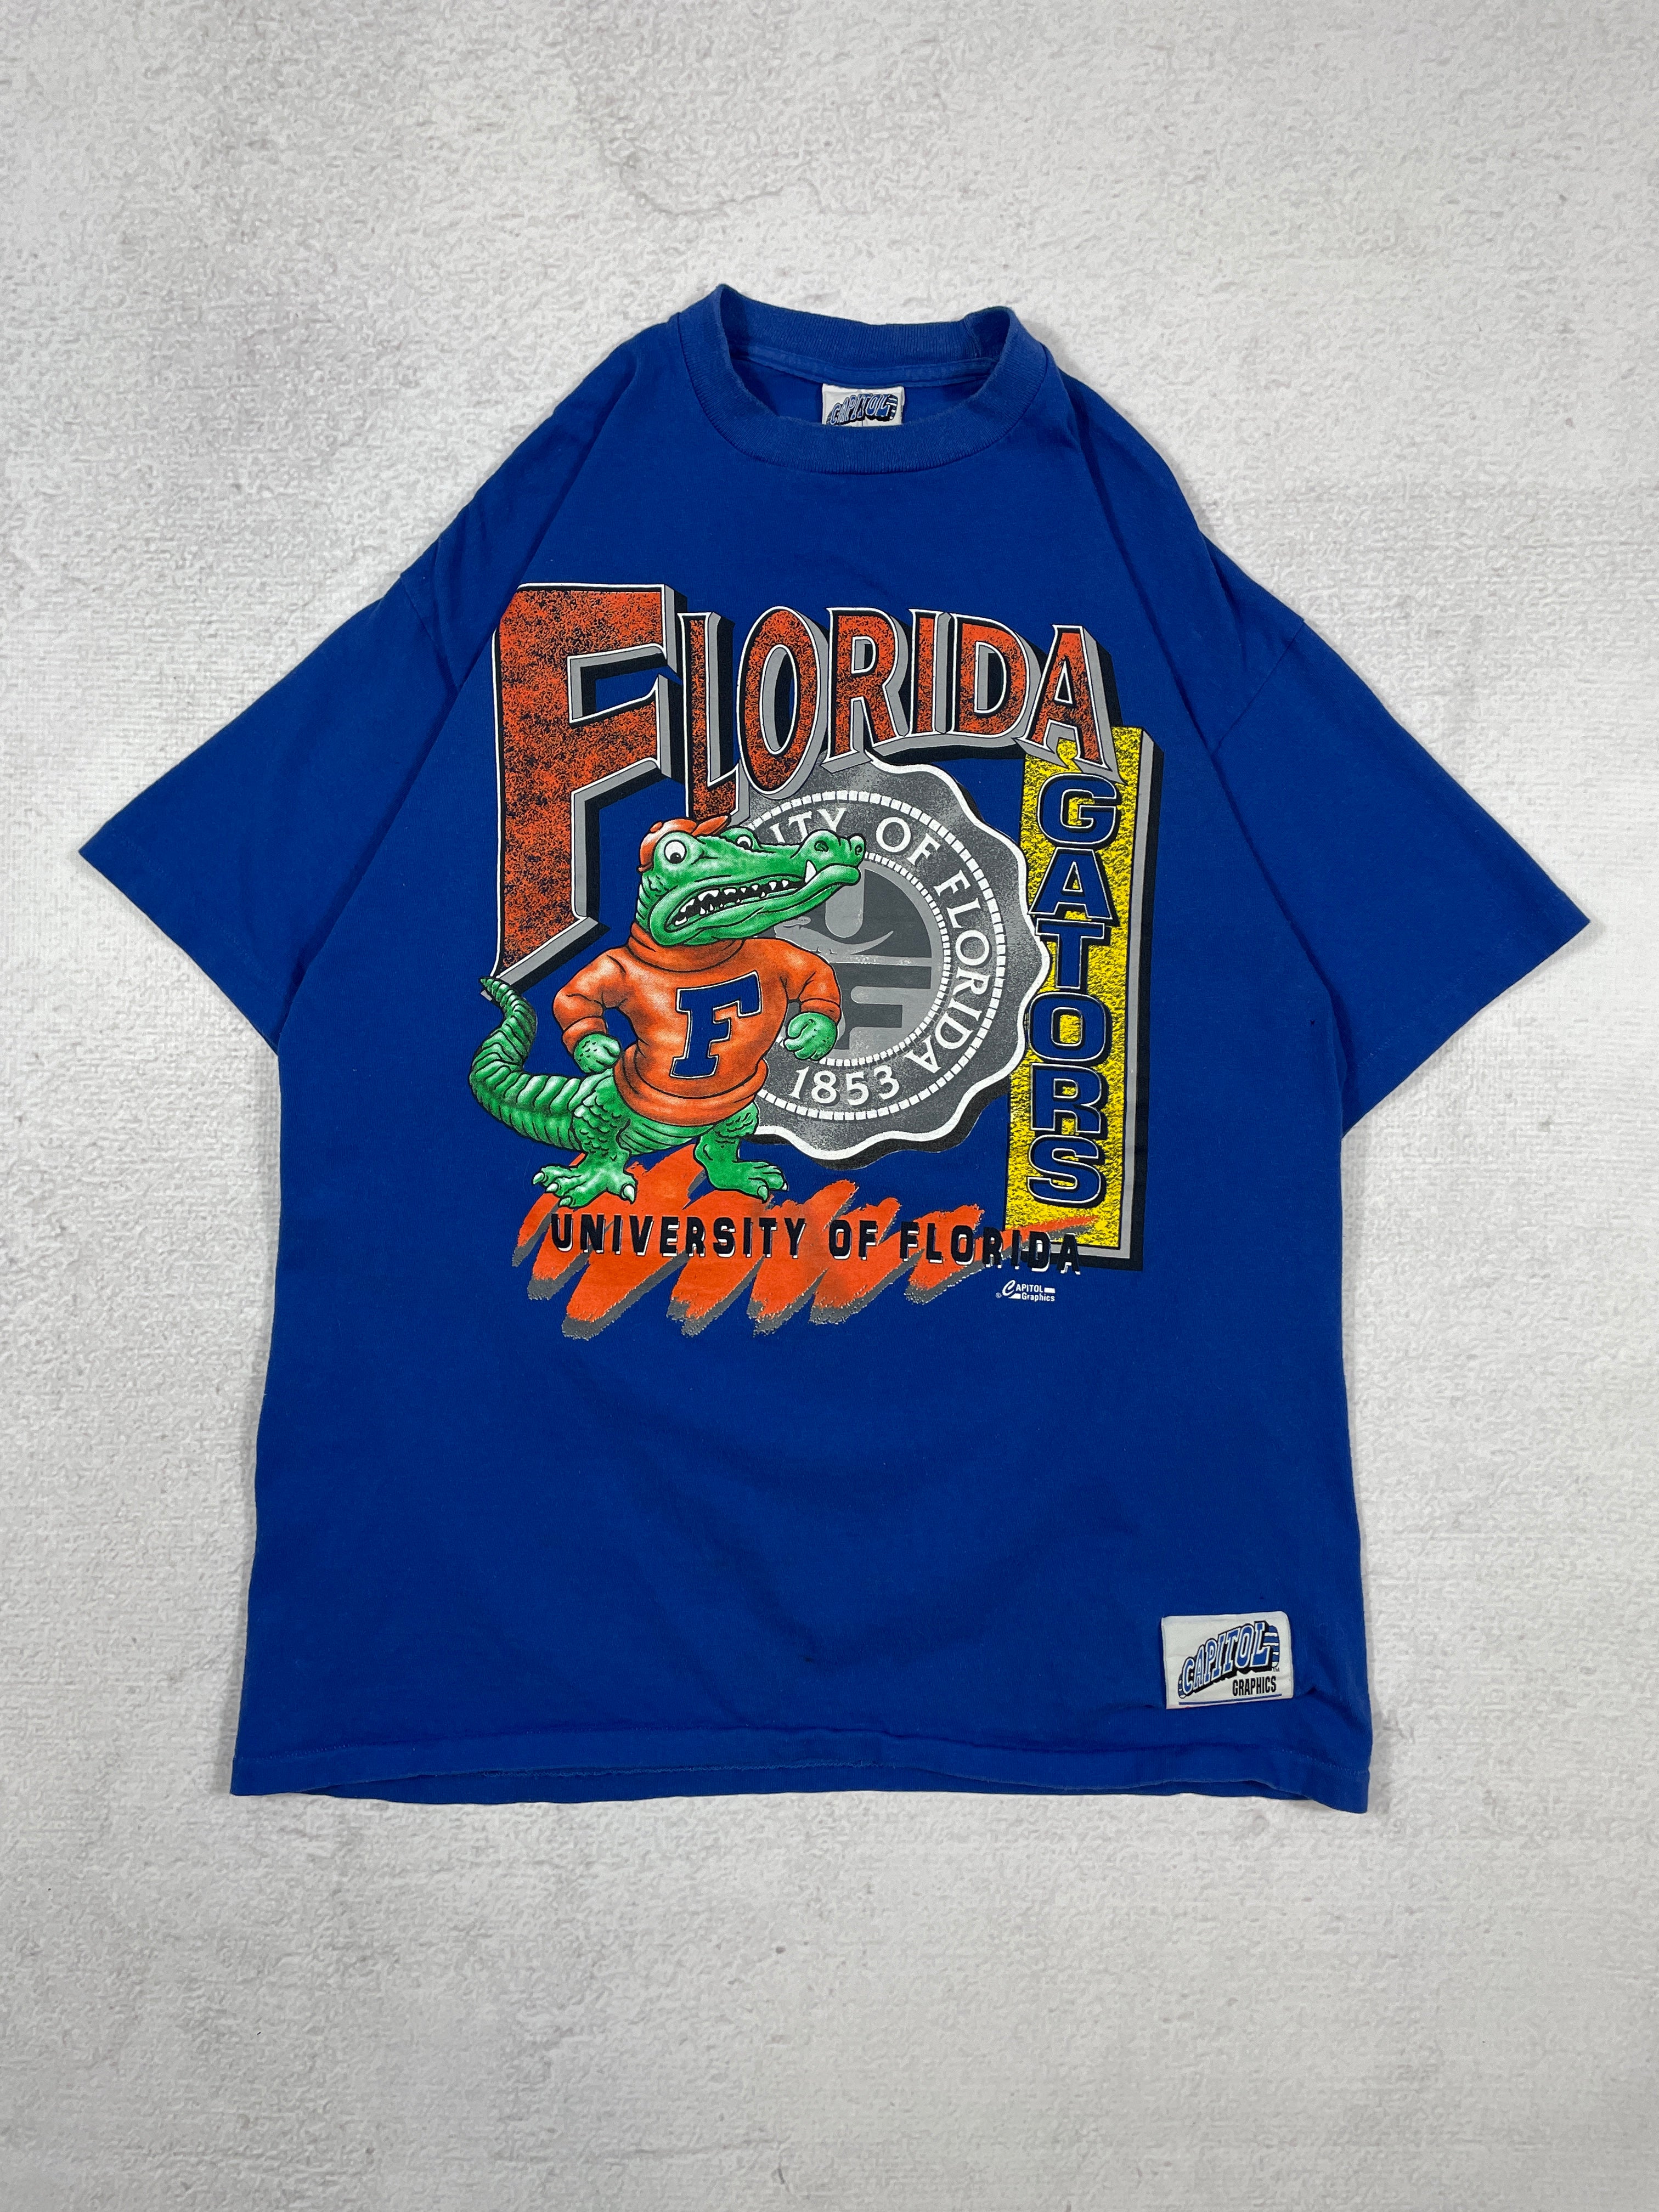 Vintage NFL Florida Gators Graphic T-Shirt - Men's XL